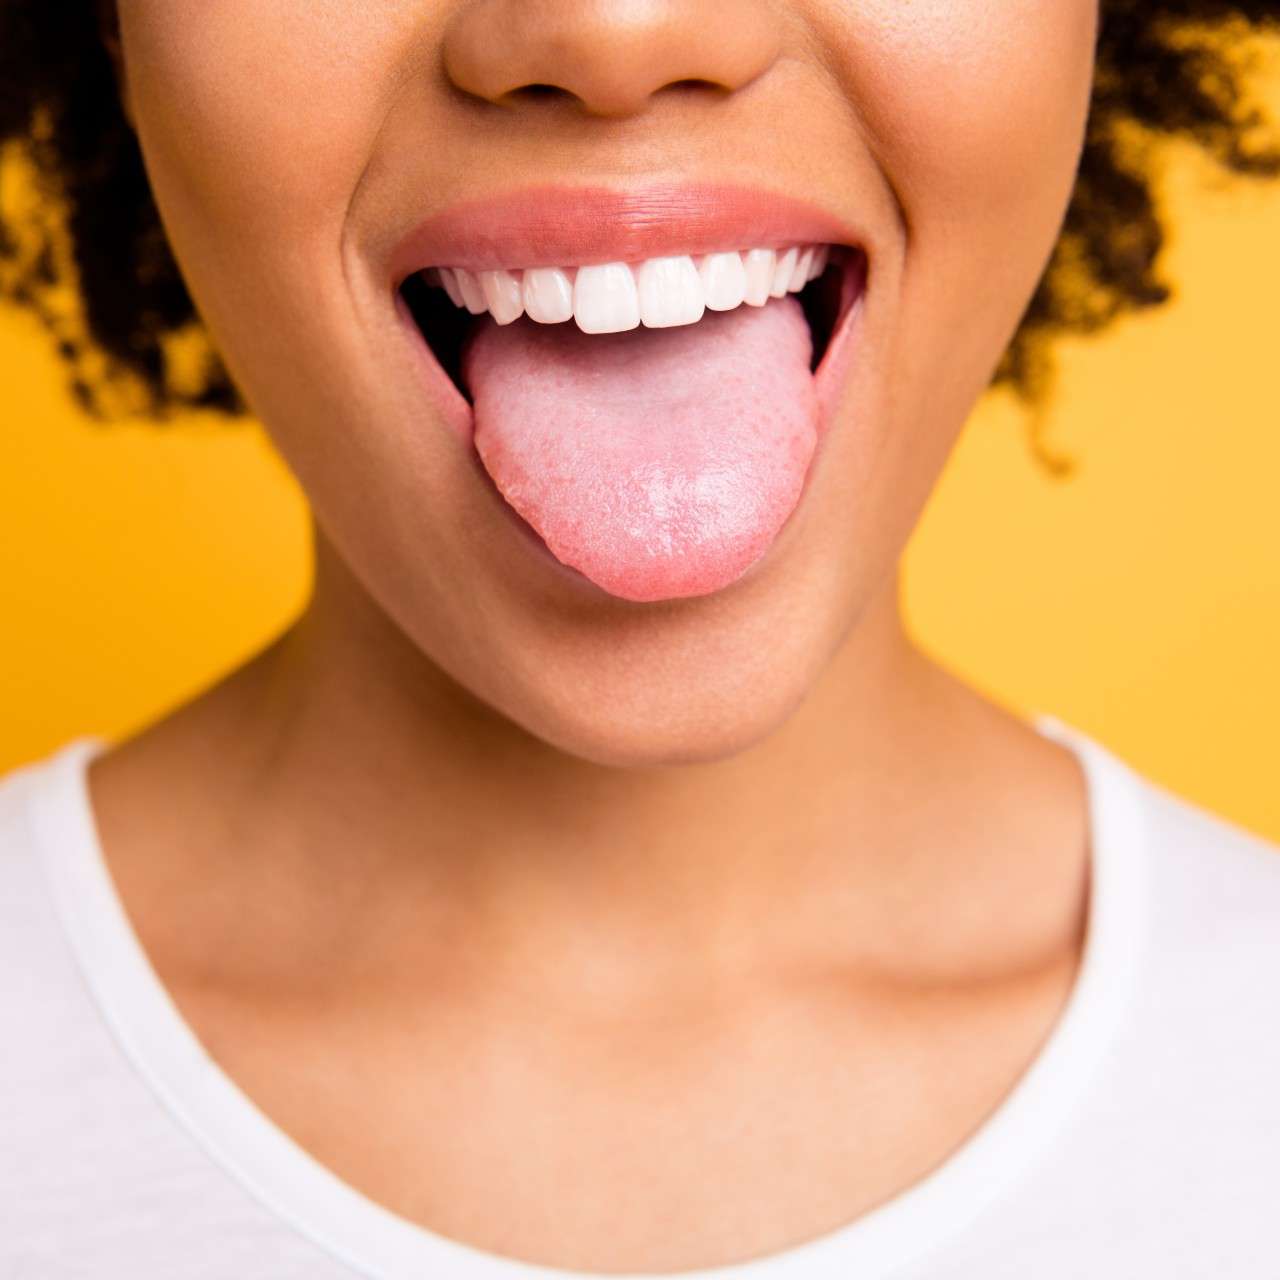 Boutons sur la langue : quelles peuvent être les causes ?